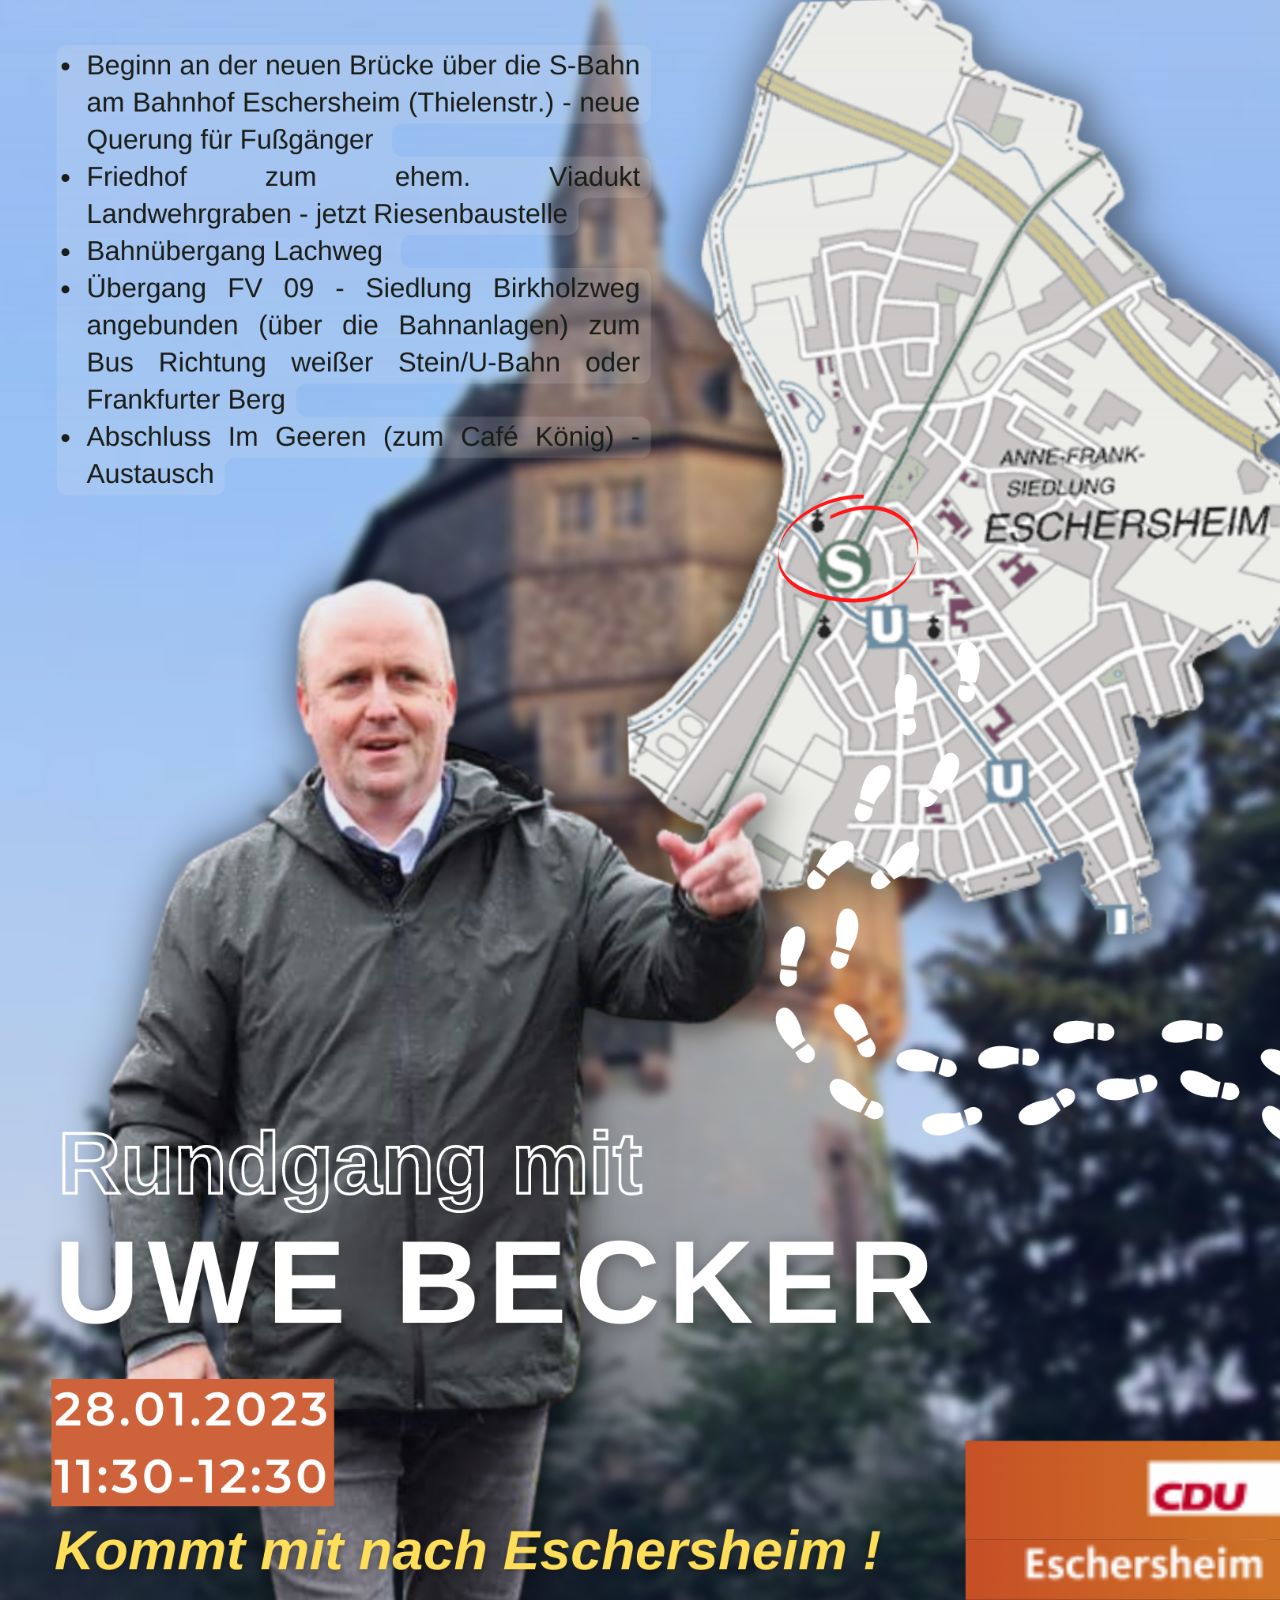 Uwe Becker nimmt sich viel Zeit für die Eschersheim
